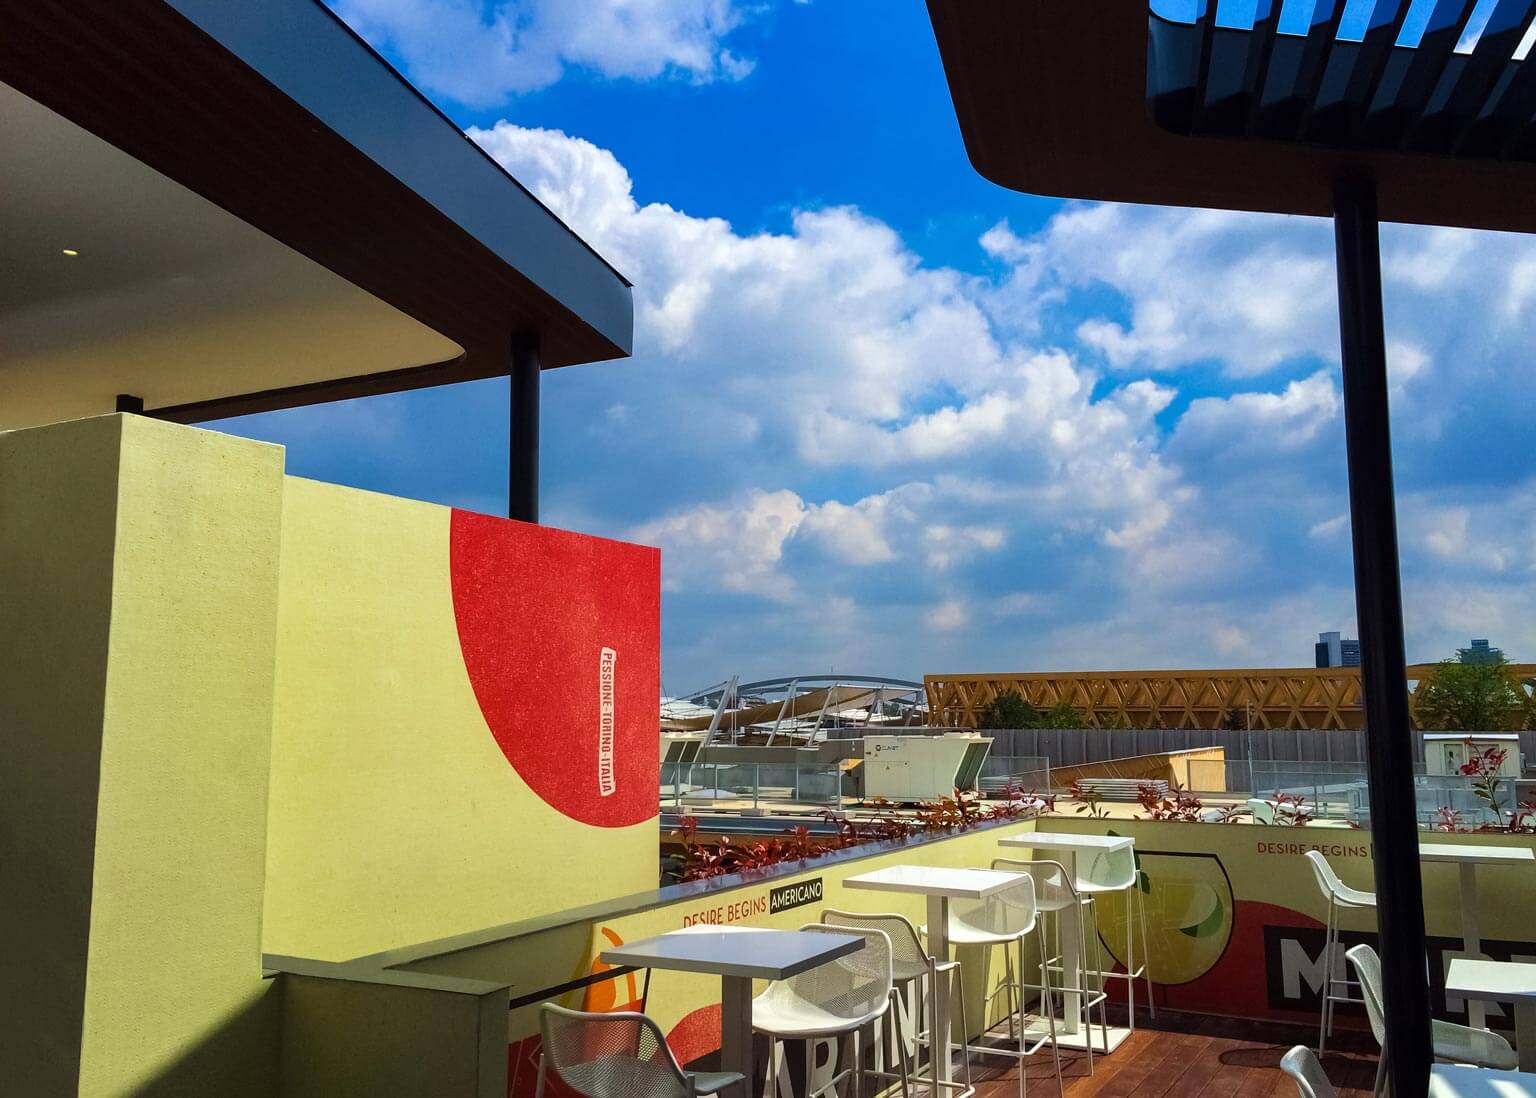 vista terrazza martini fiera expo milano 2015 dettagli progetto pininfarina pergolato architettonico opere in cartongesso Bazzea